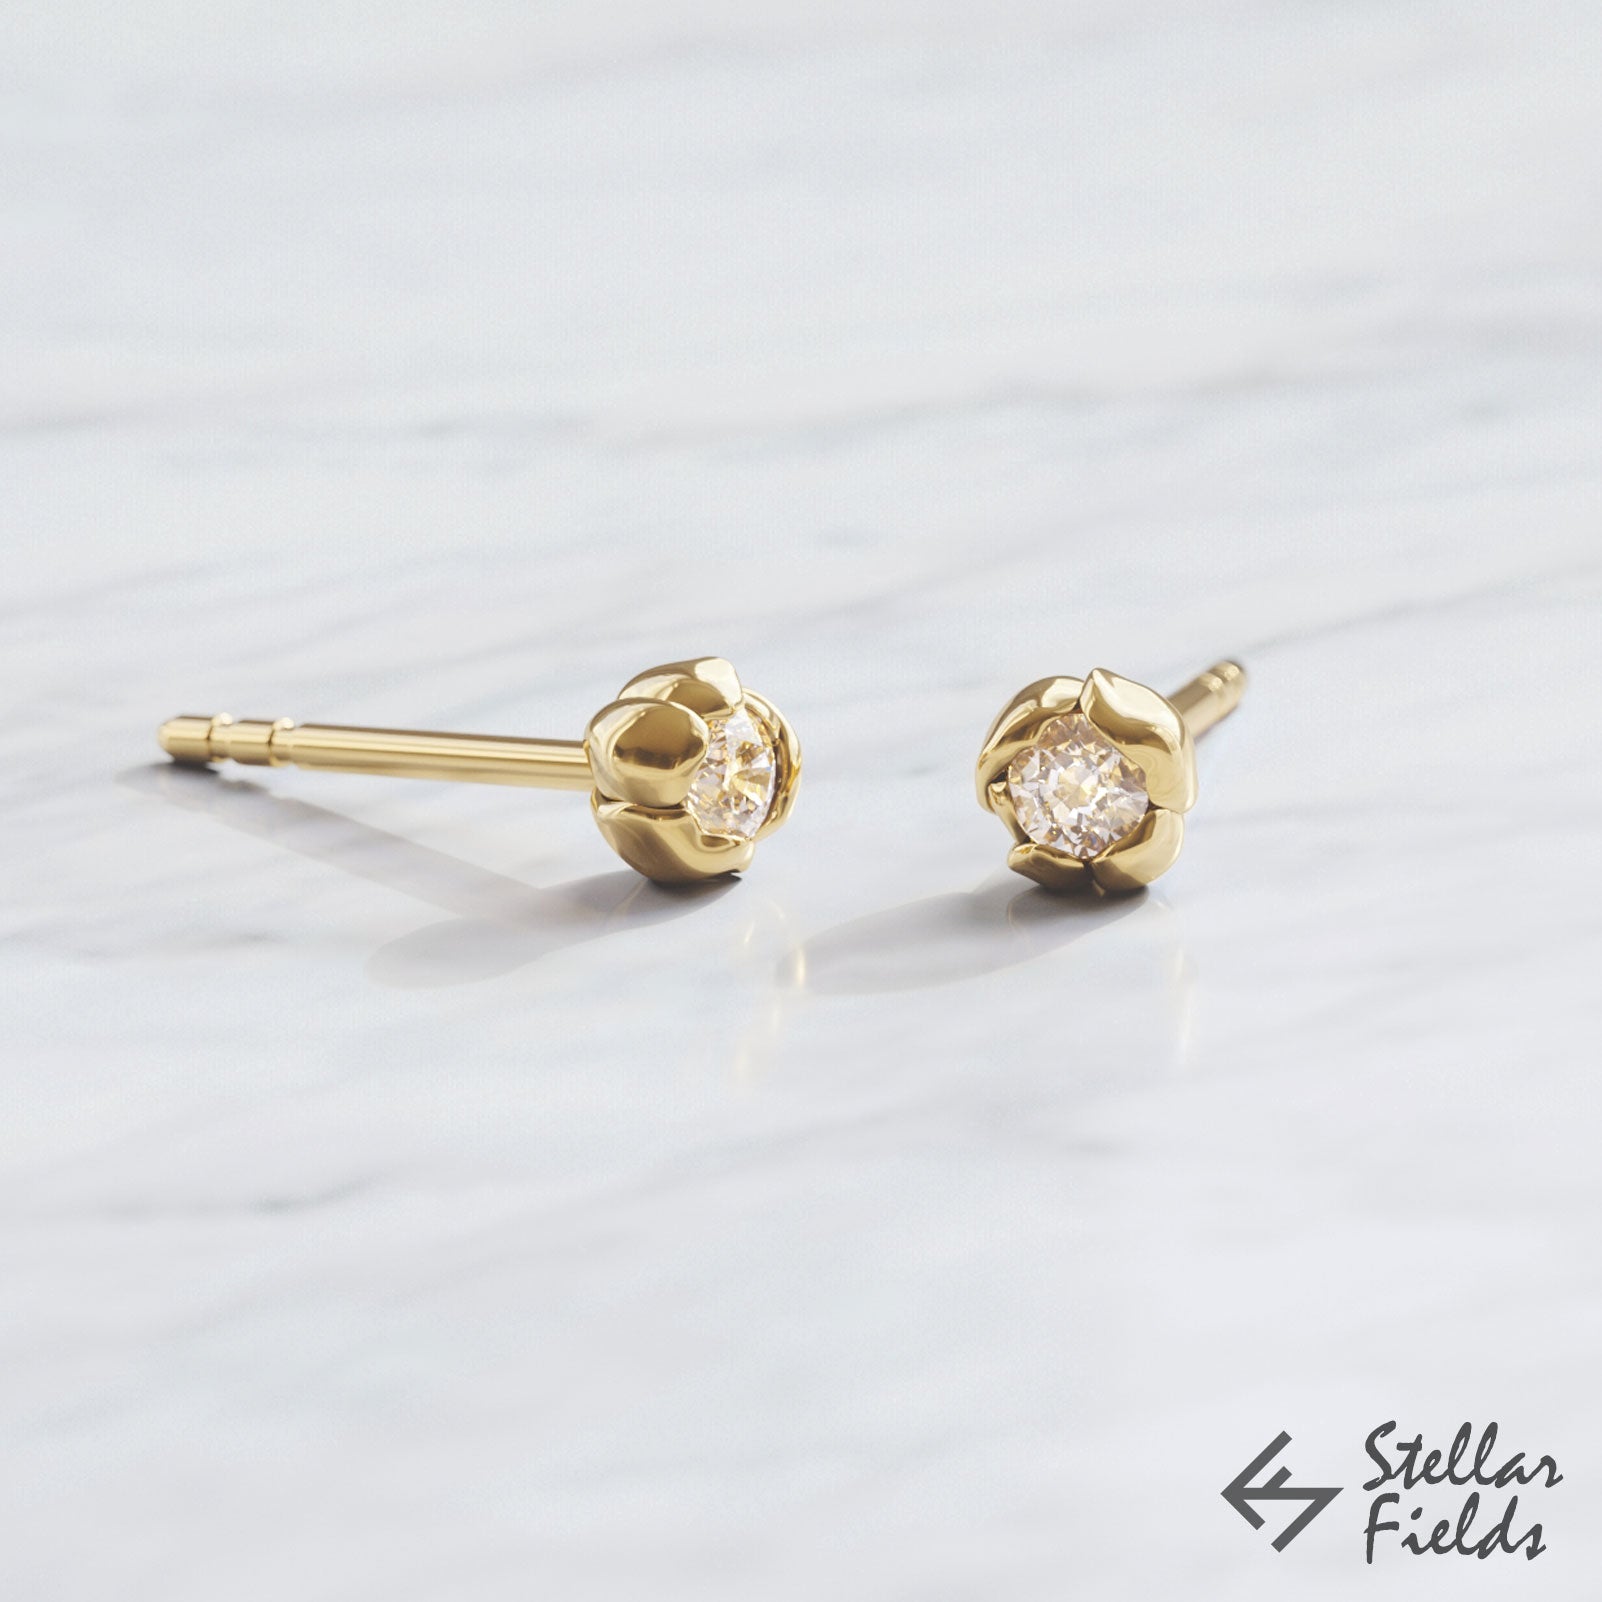 diamond rose flower earrings studs 14k yellow Gold Stellar Fields Jewelry